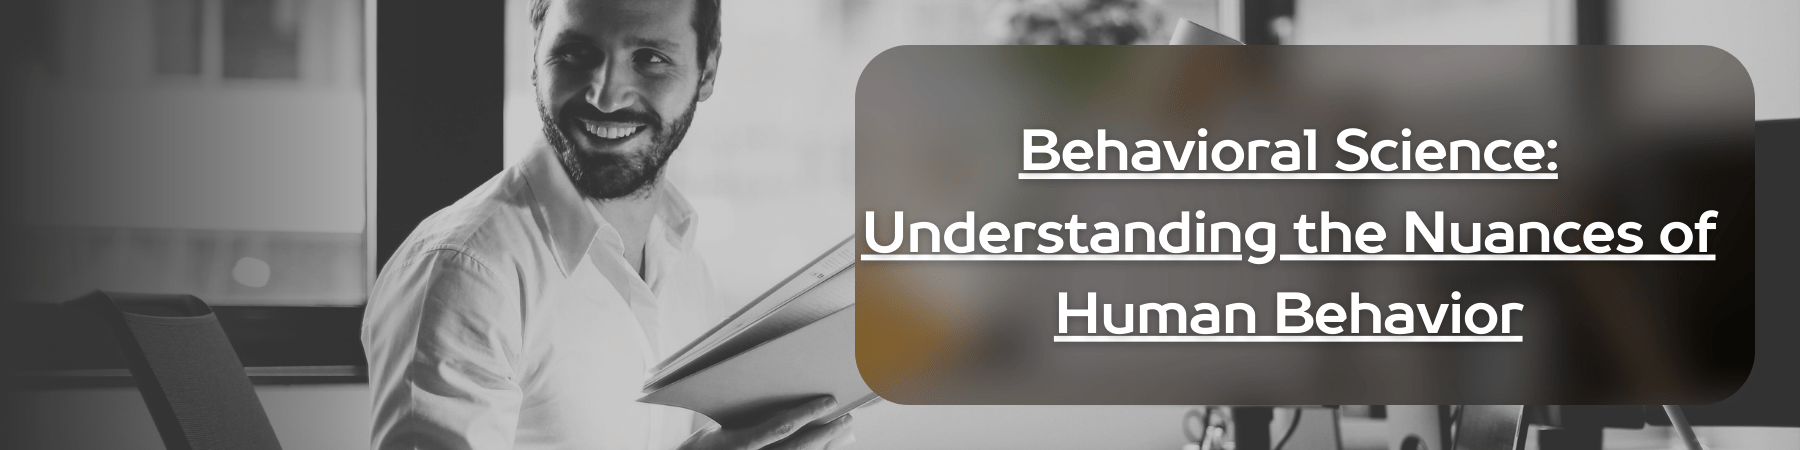 Behavioral Science_ Understanding the Nuances of Human Behavior